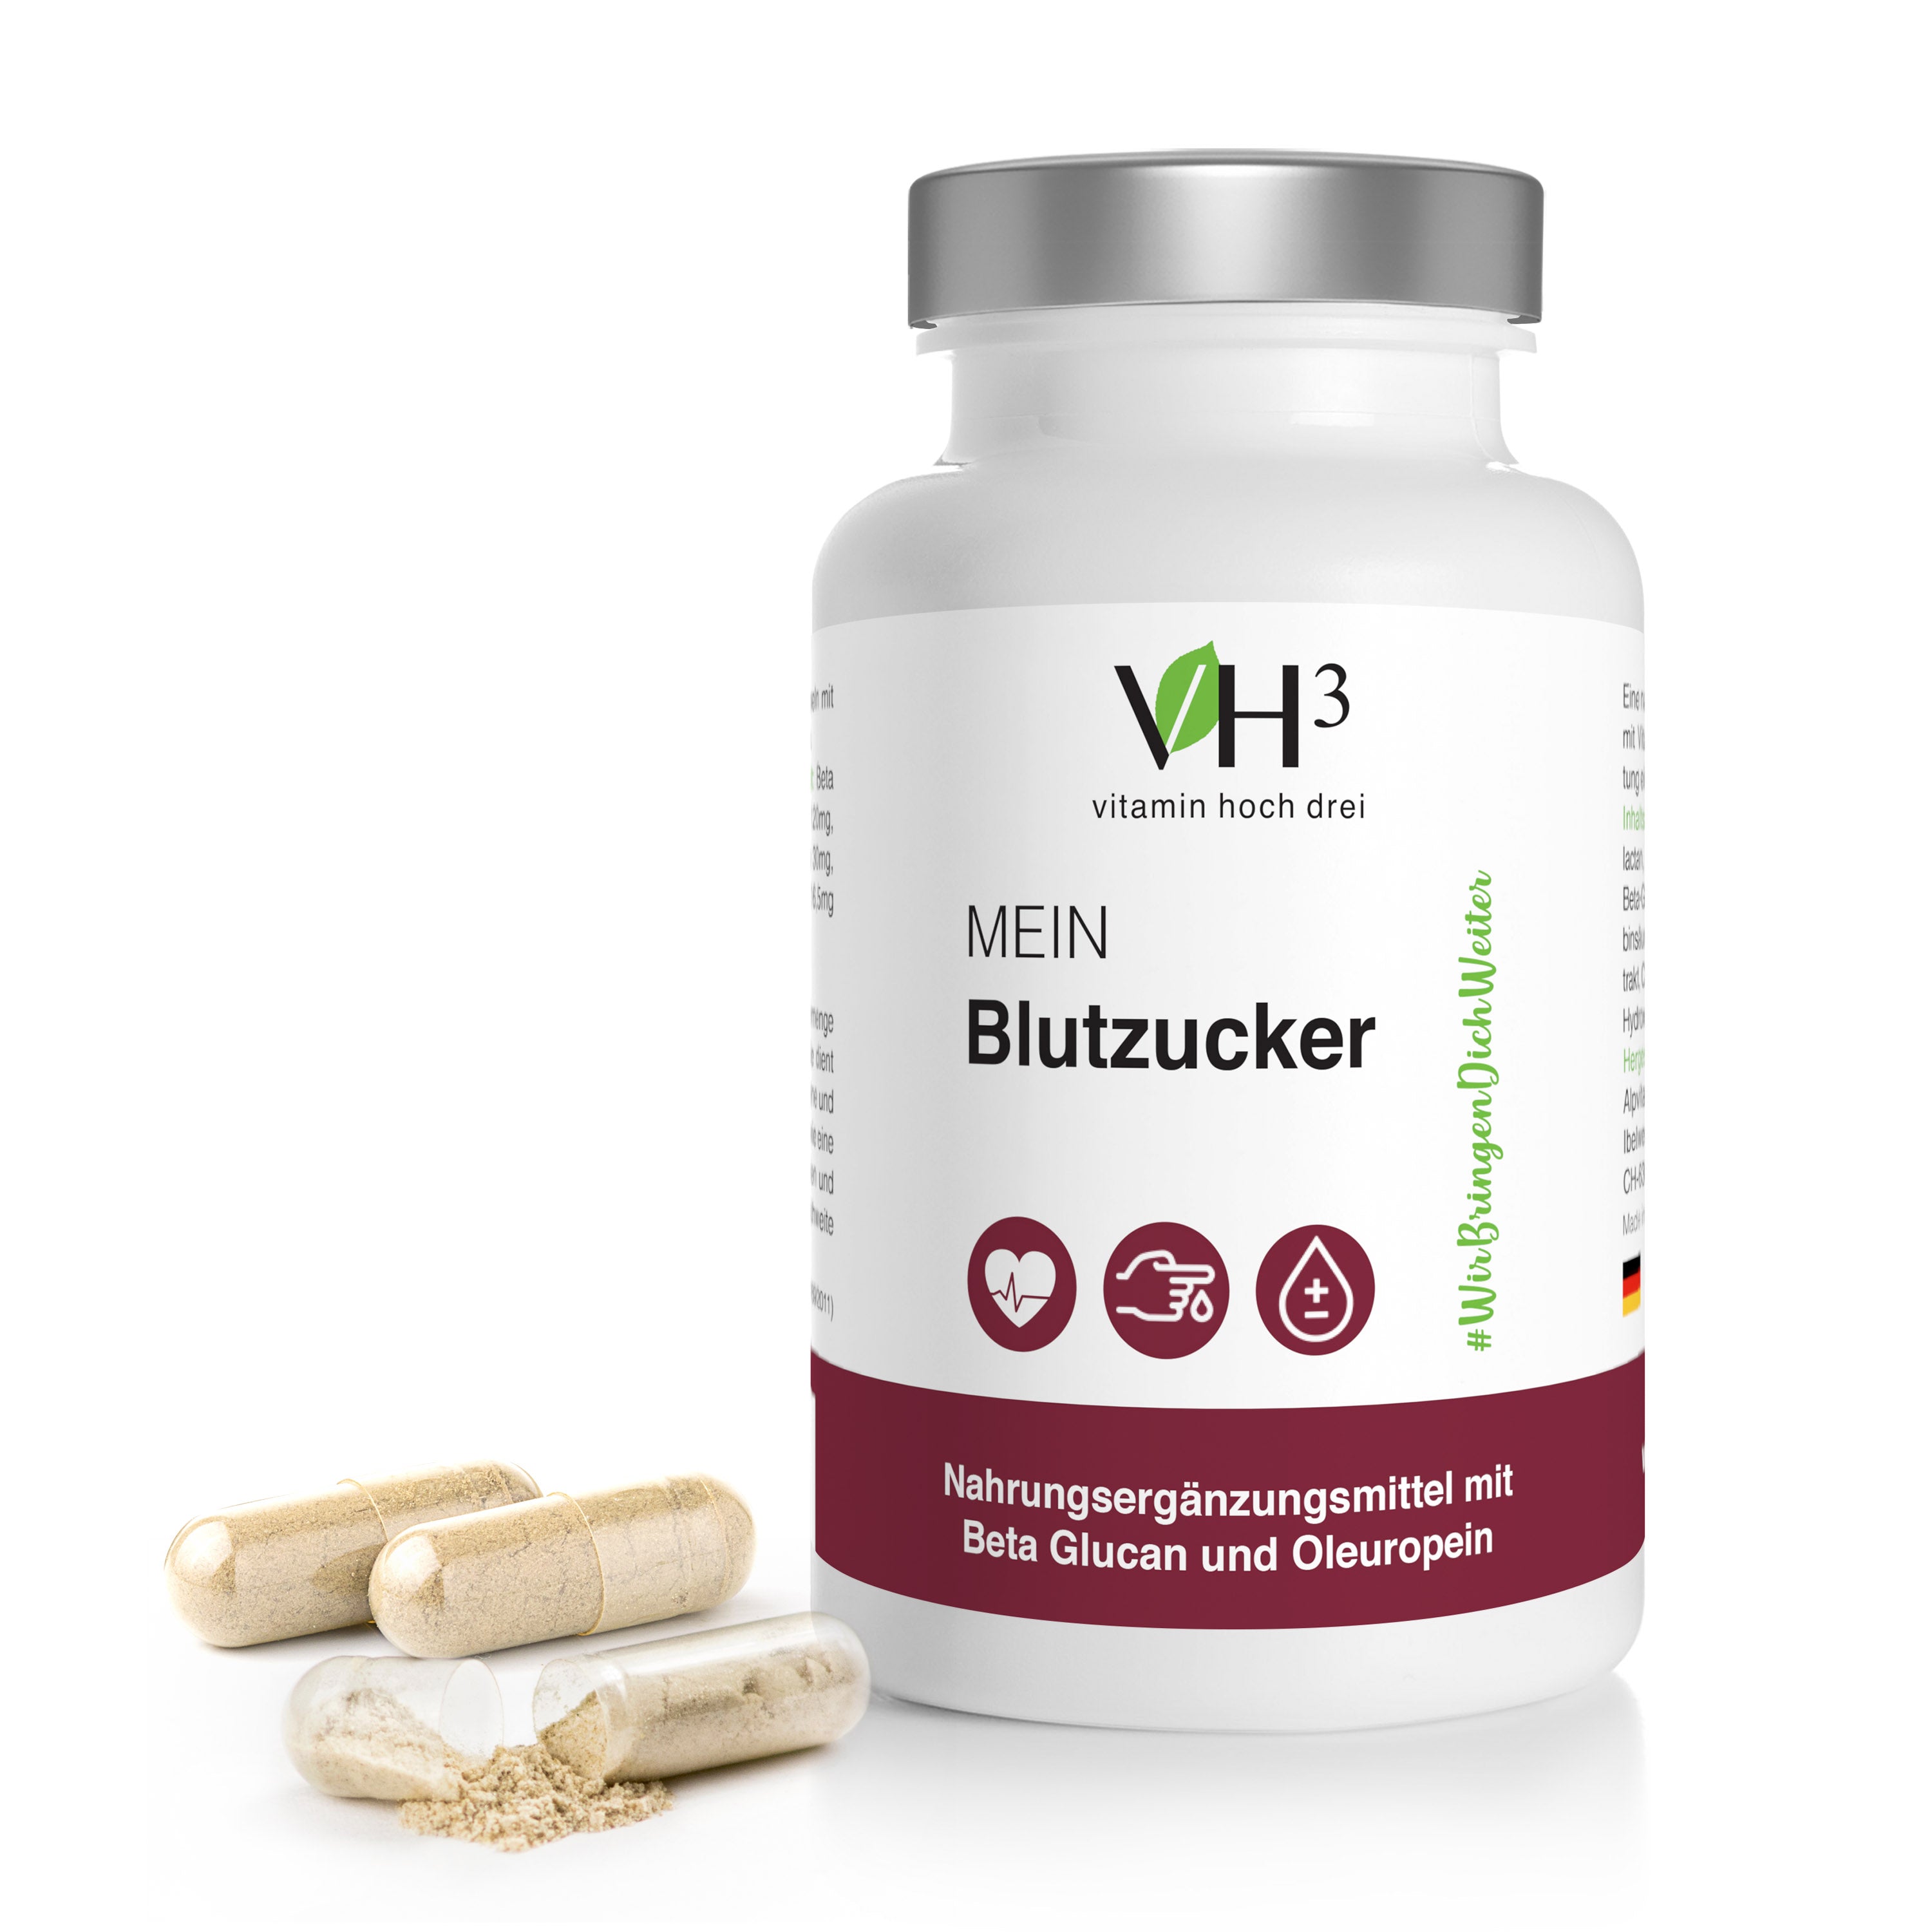 VH3 MEIN Blutzucker mit Beta Glucan, Oleuropein Biotin und Vitamin C